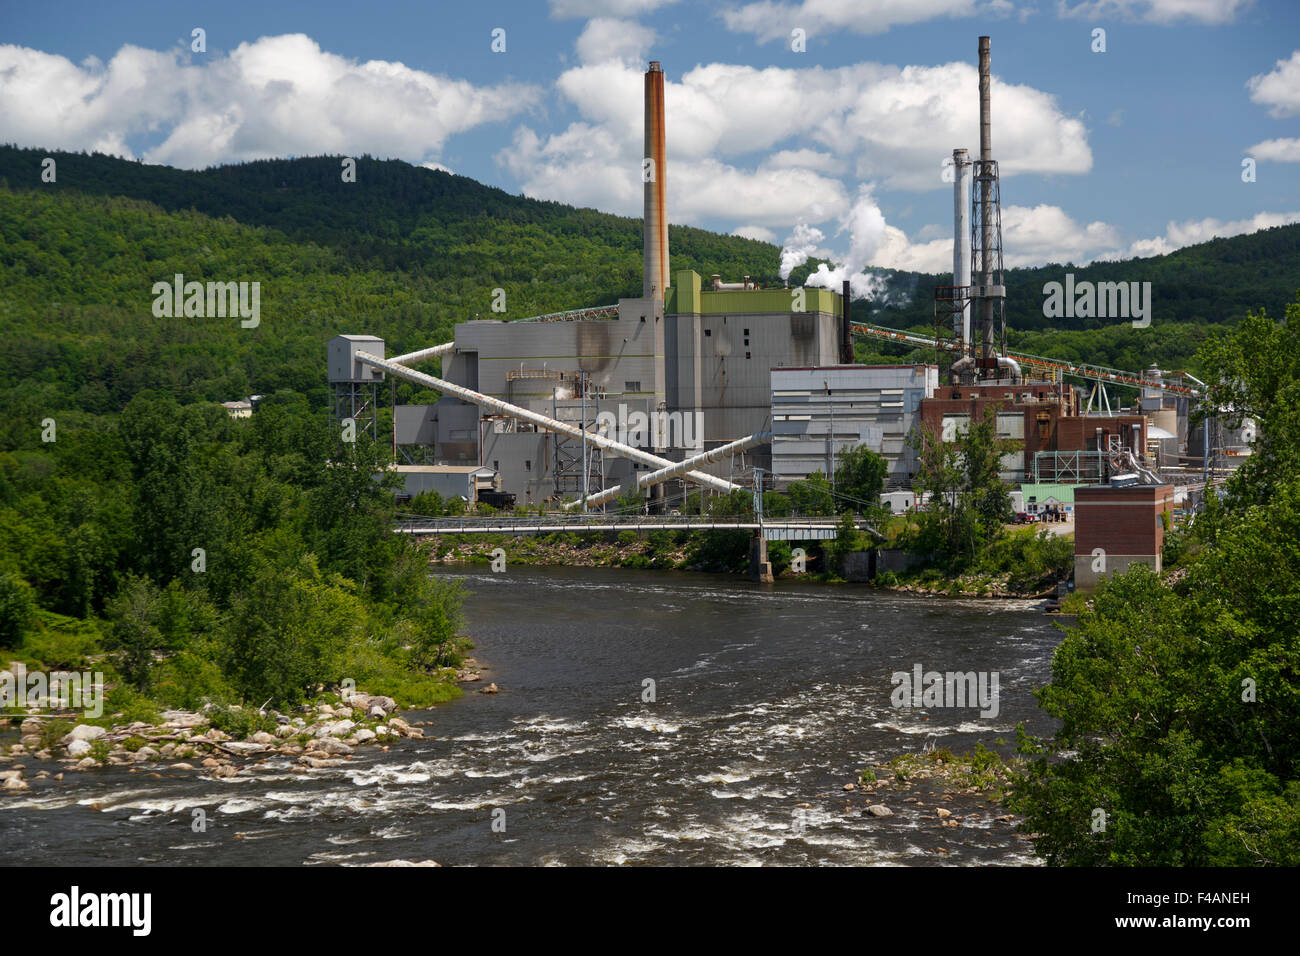 L'usine de pâte et papier Rumford moulin situé sur la rivière Androscoggin, vu d'un pont sur la rivière. Maine USA Juin 2015 Banque D'Images